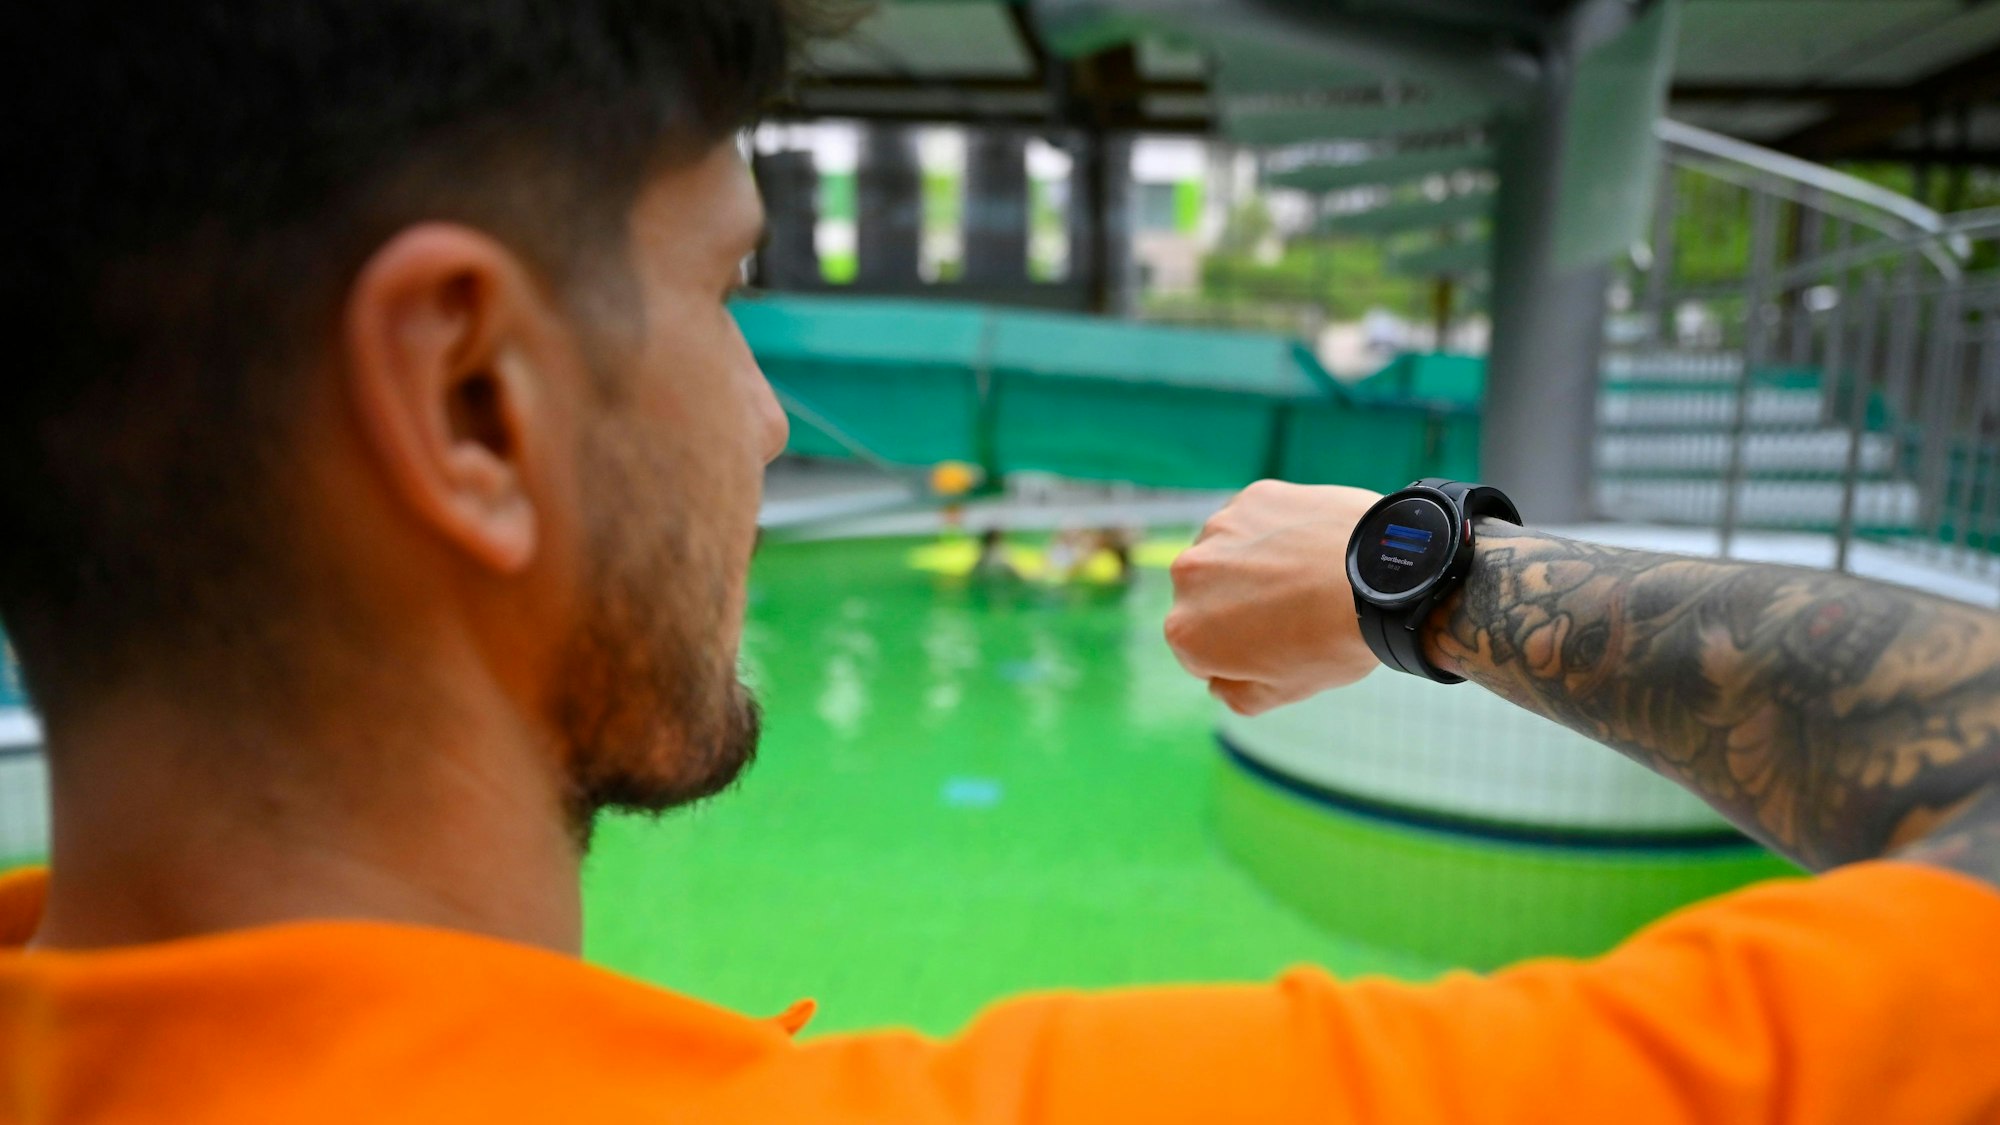 Ein Mann steht am Rand eines Schwimmbeckens und schaut auf eine Smartwatch auf seinem Handgelenk.